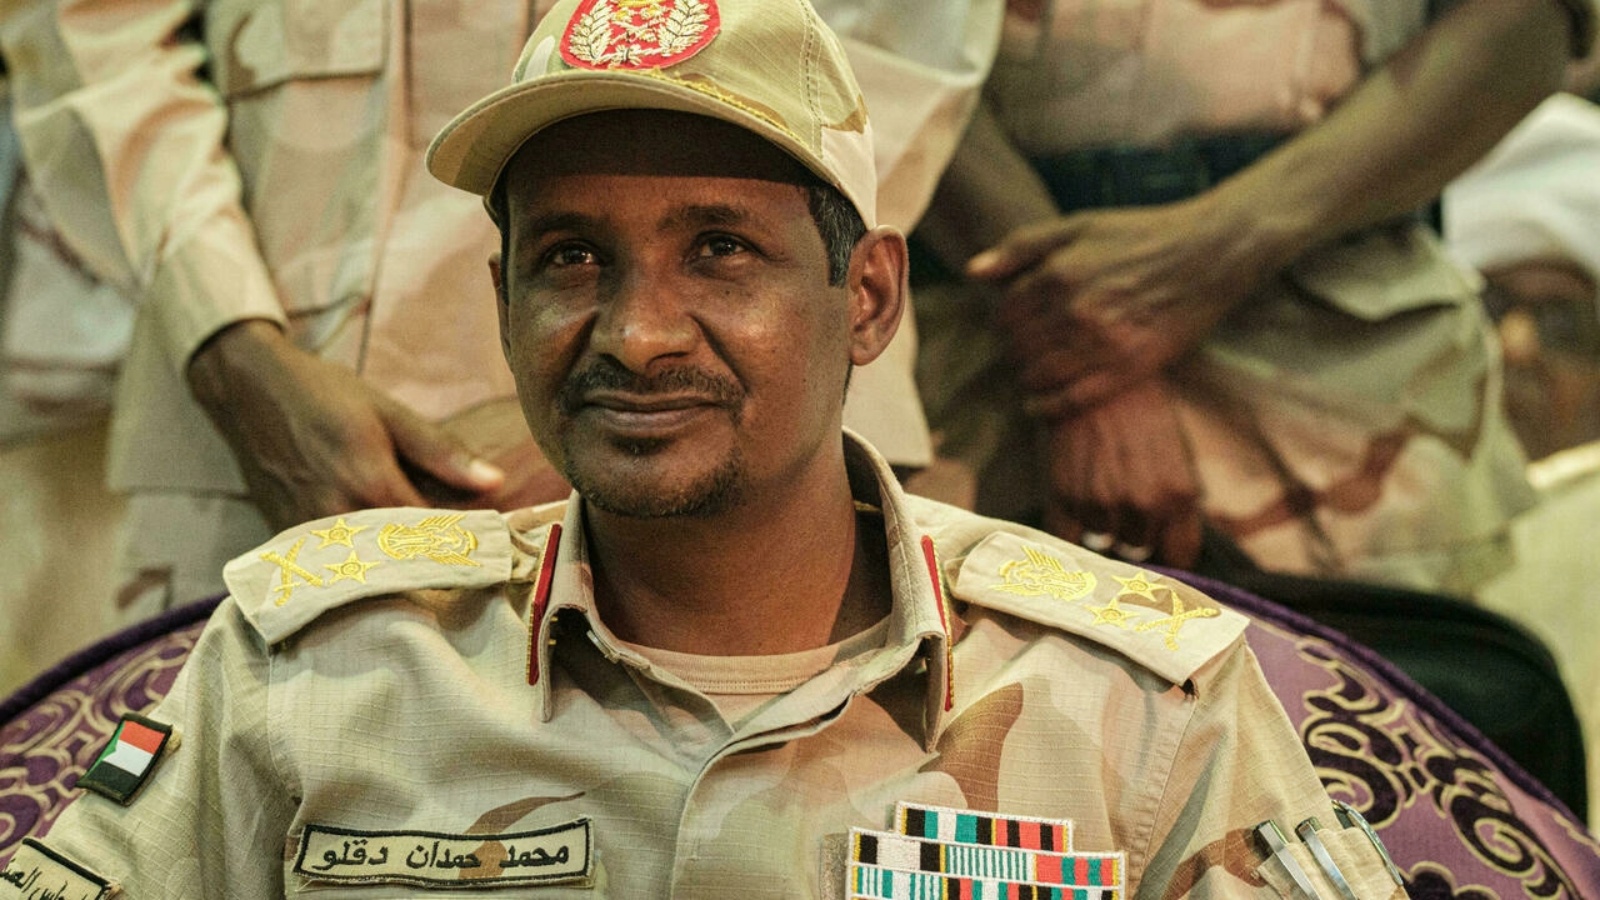 نائب رئيس المجلس العسكري الحاكم في السودان محمد حمدان دقلو المشهور بحمديتي خلال لقاء مع أنصاره في الخرطوم في 18 يونيو 2019.